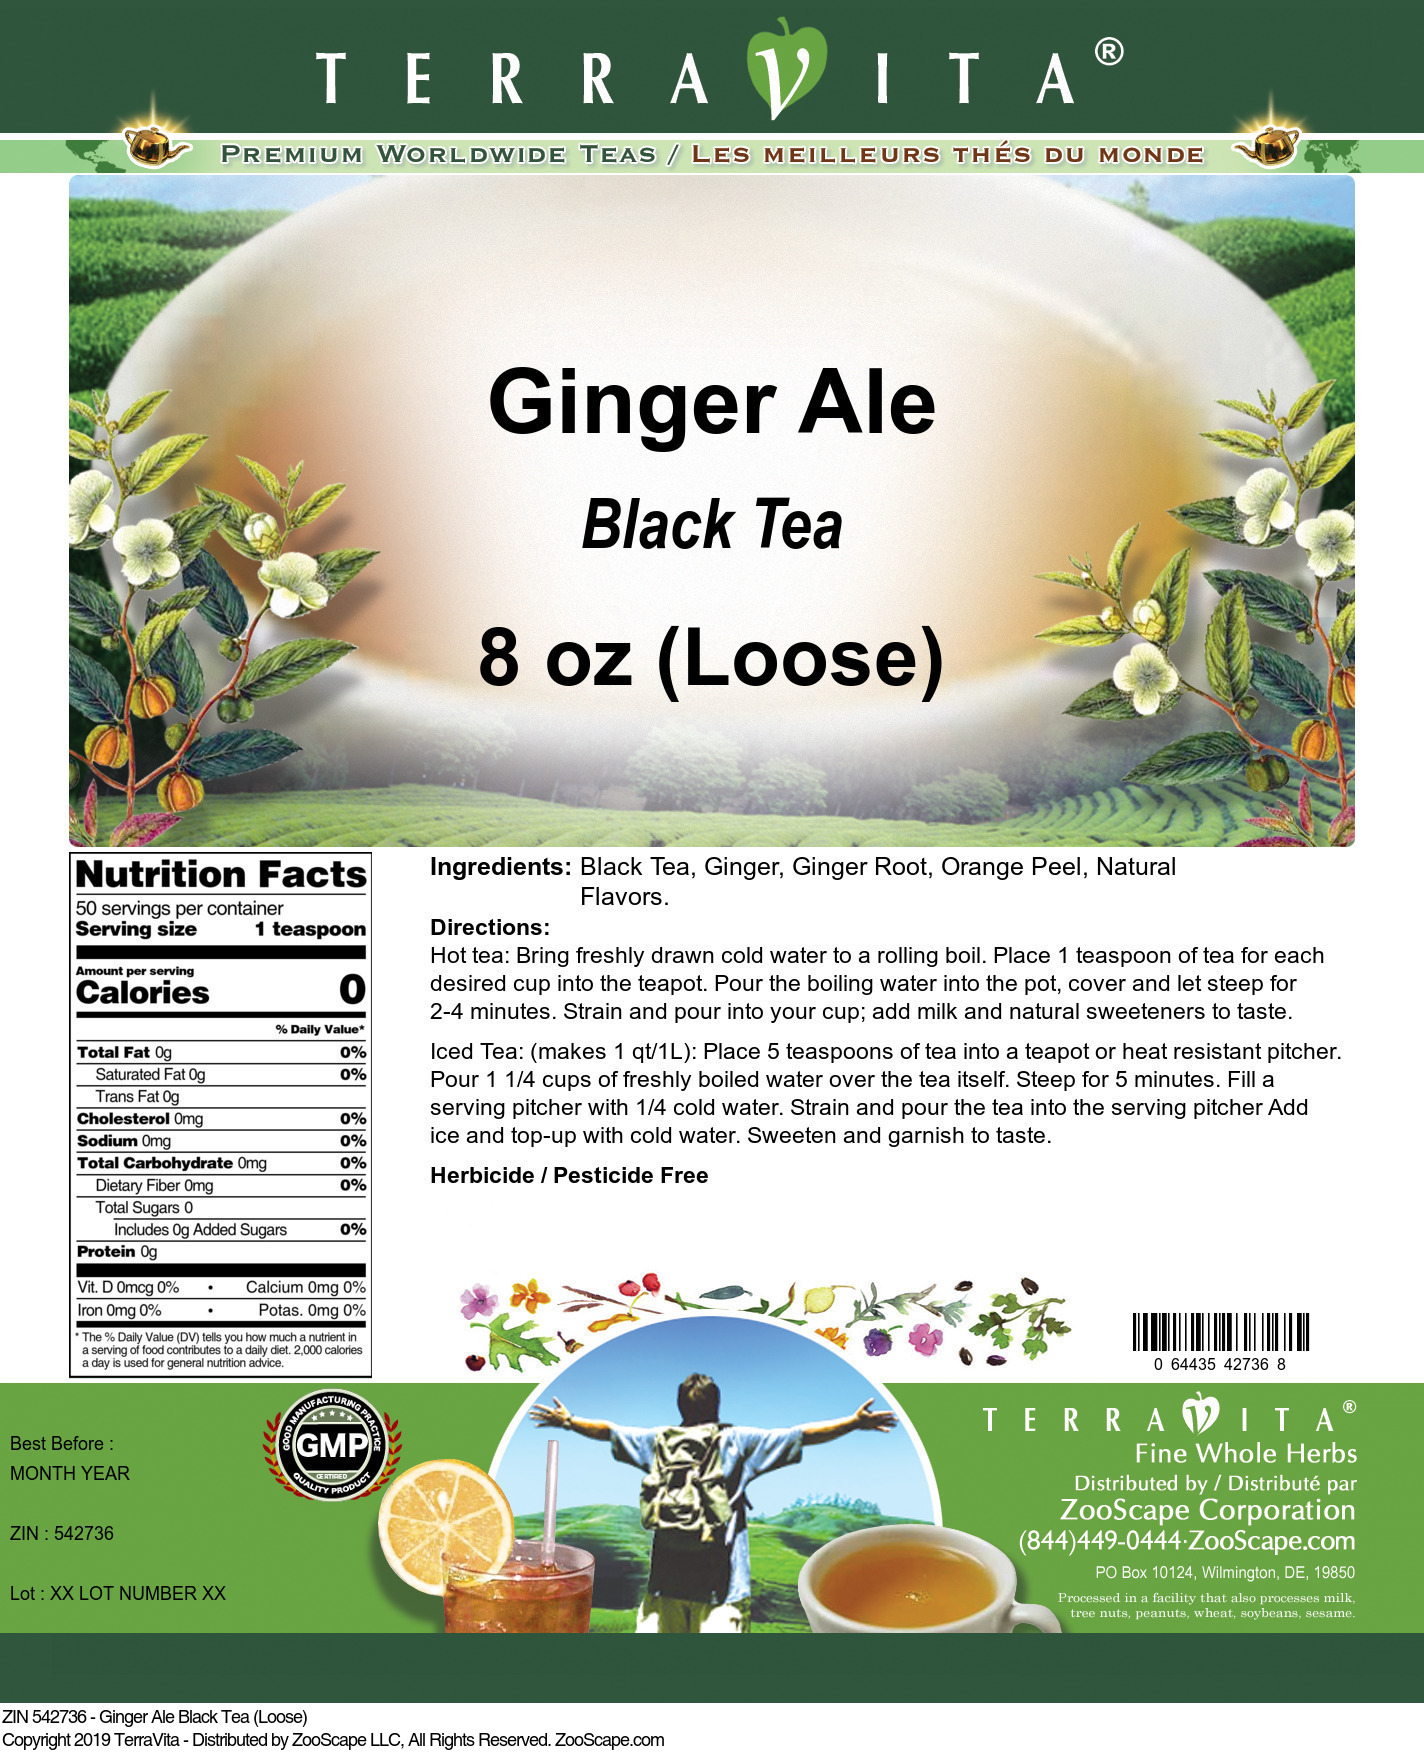 Ginger Ale Black Tea (Loose) - Label